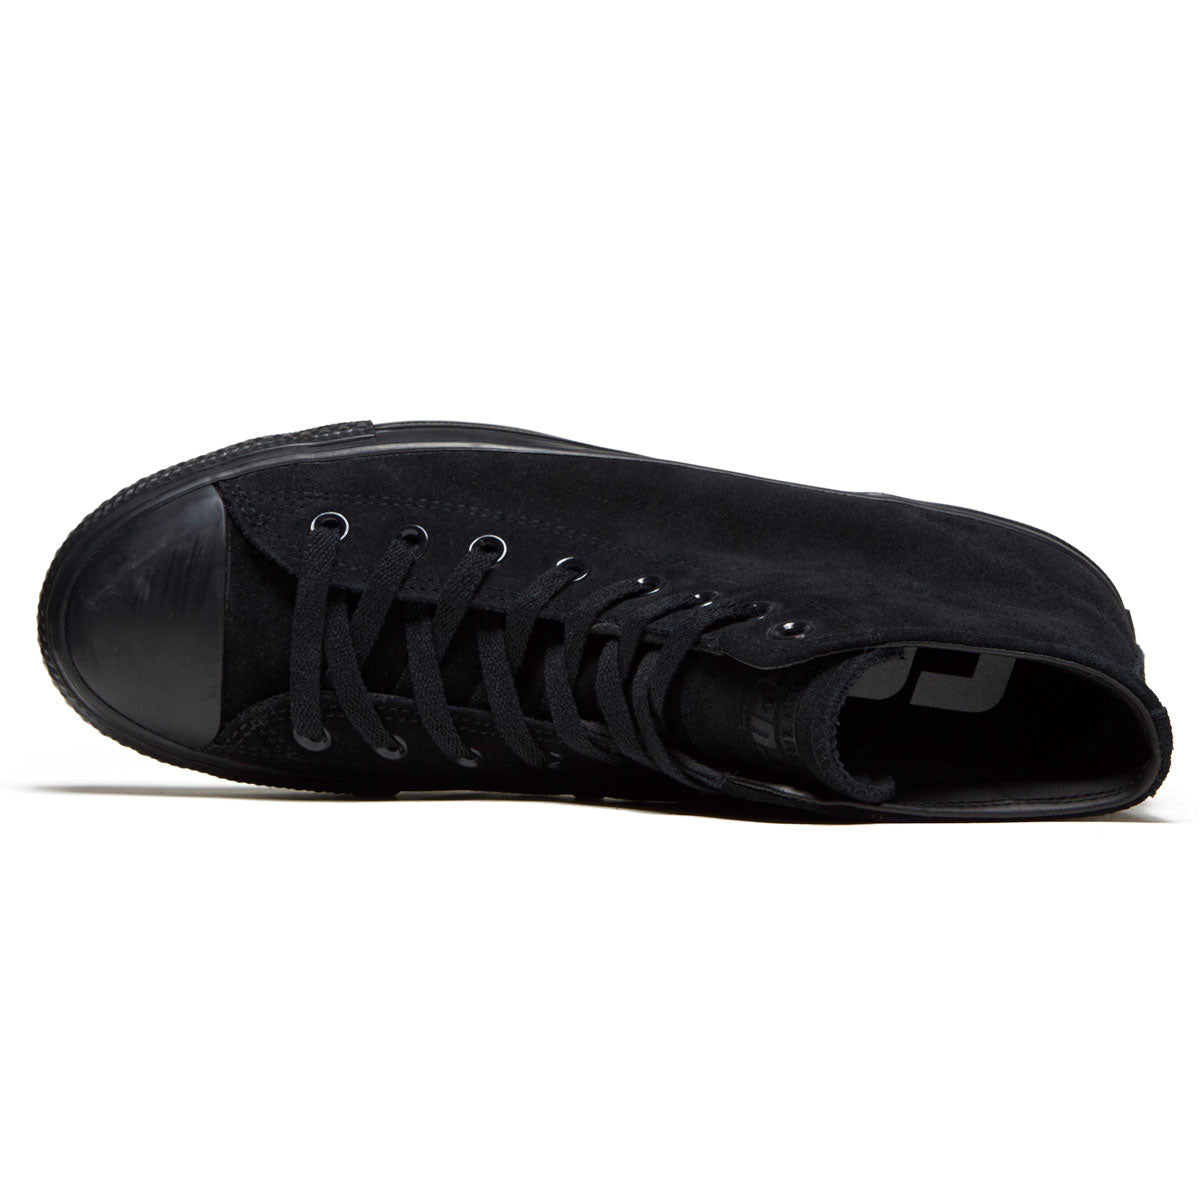 Converse Chuck Taylor All Star Pro Hi Shoes - Black/Black/Black, – CCS